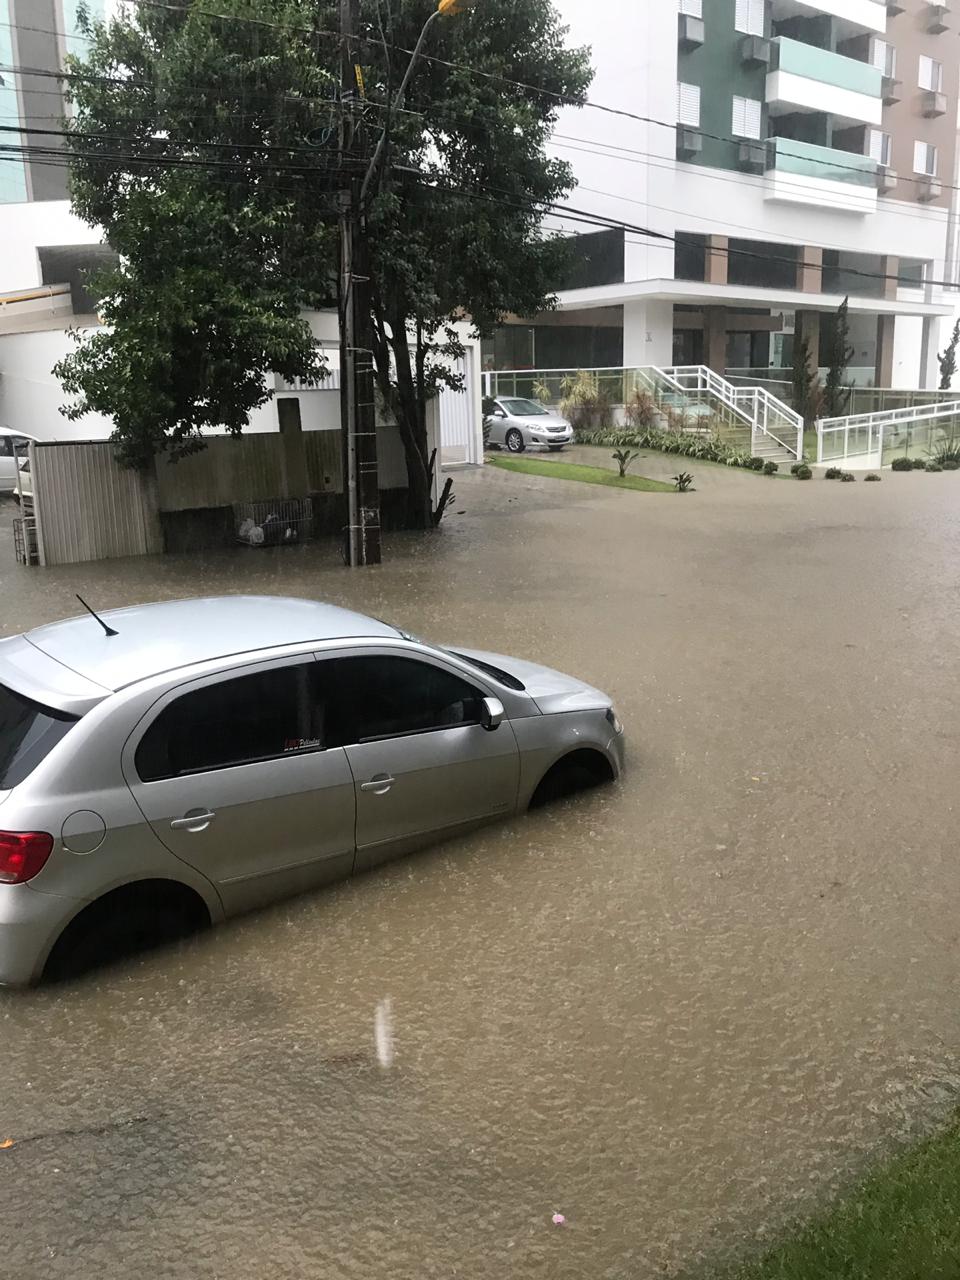 Bairros e área central são atingidos pelas chuvas em Criciúma